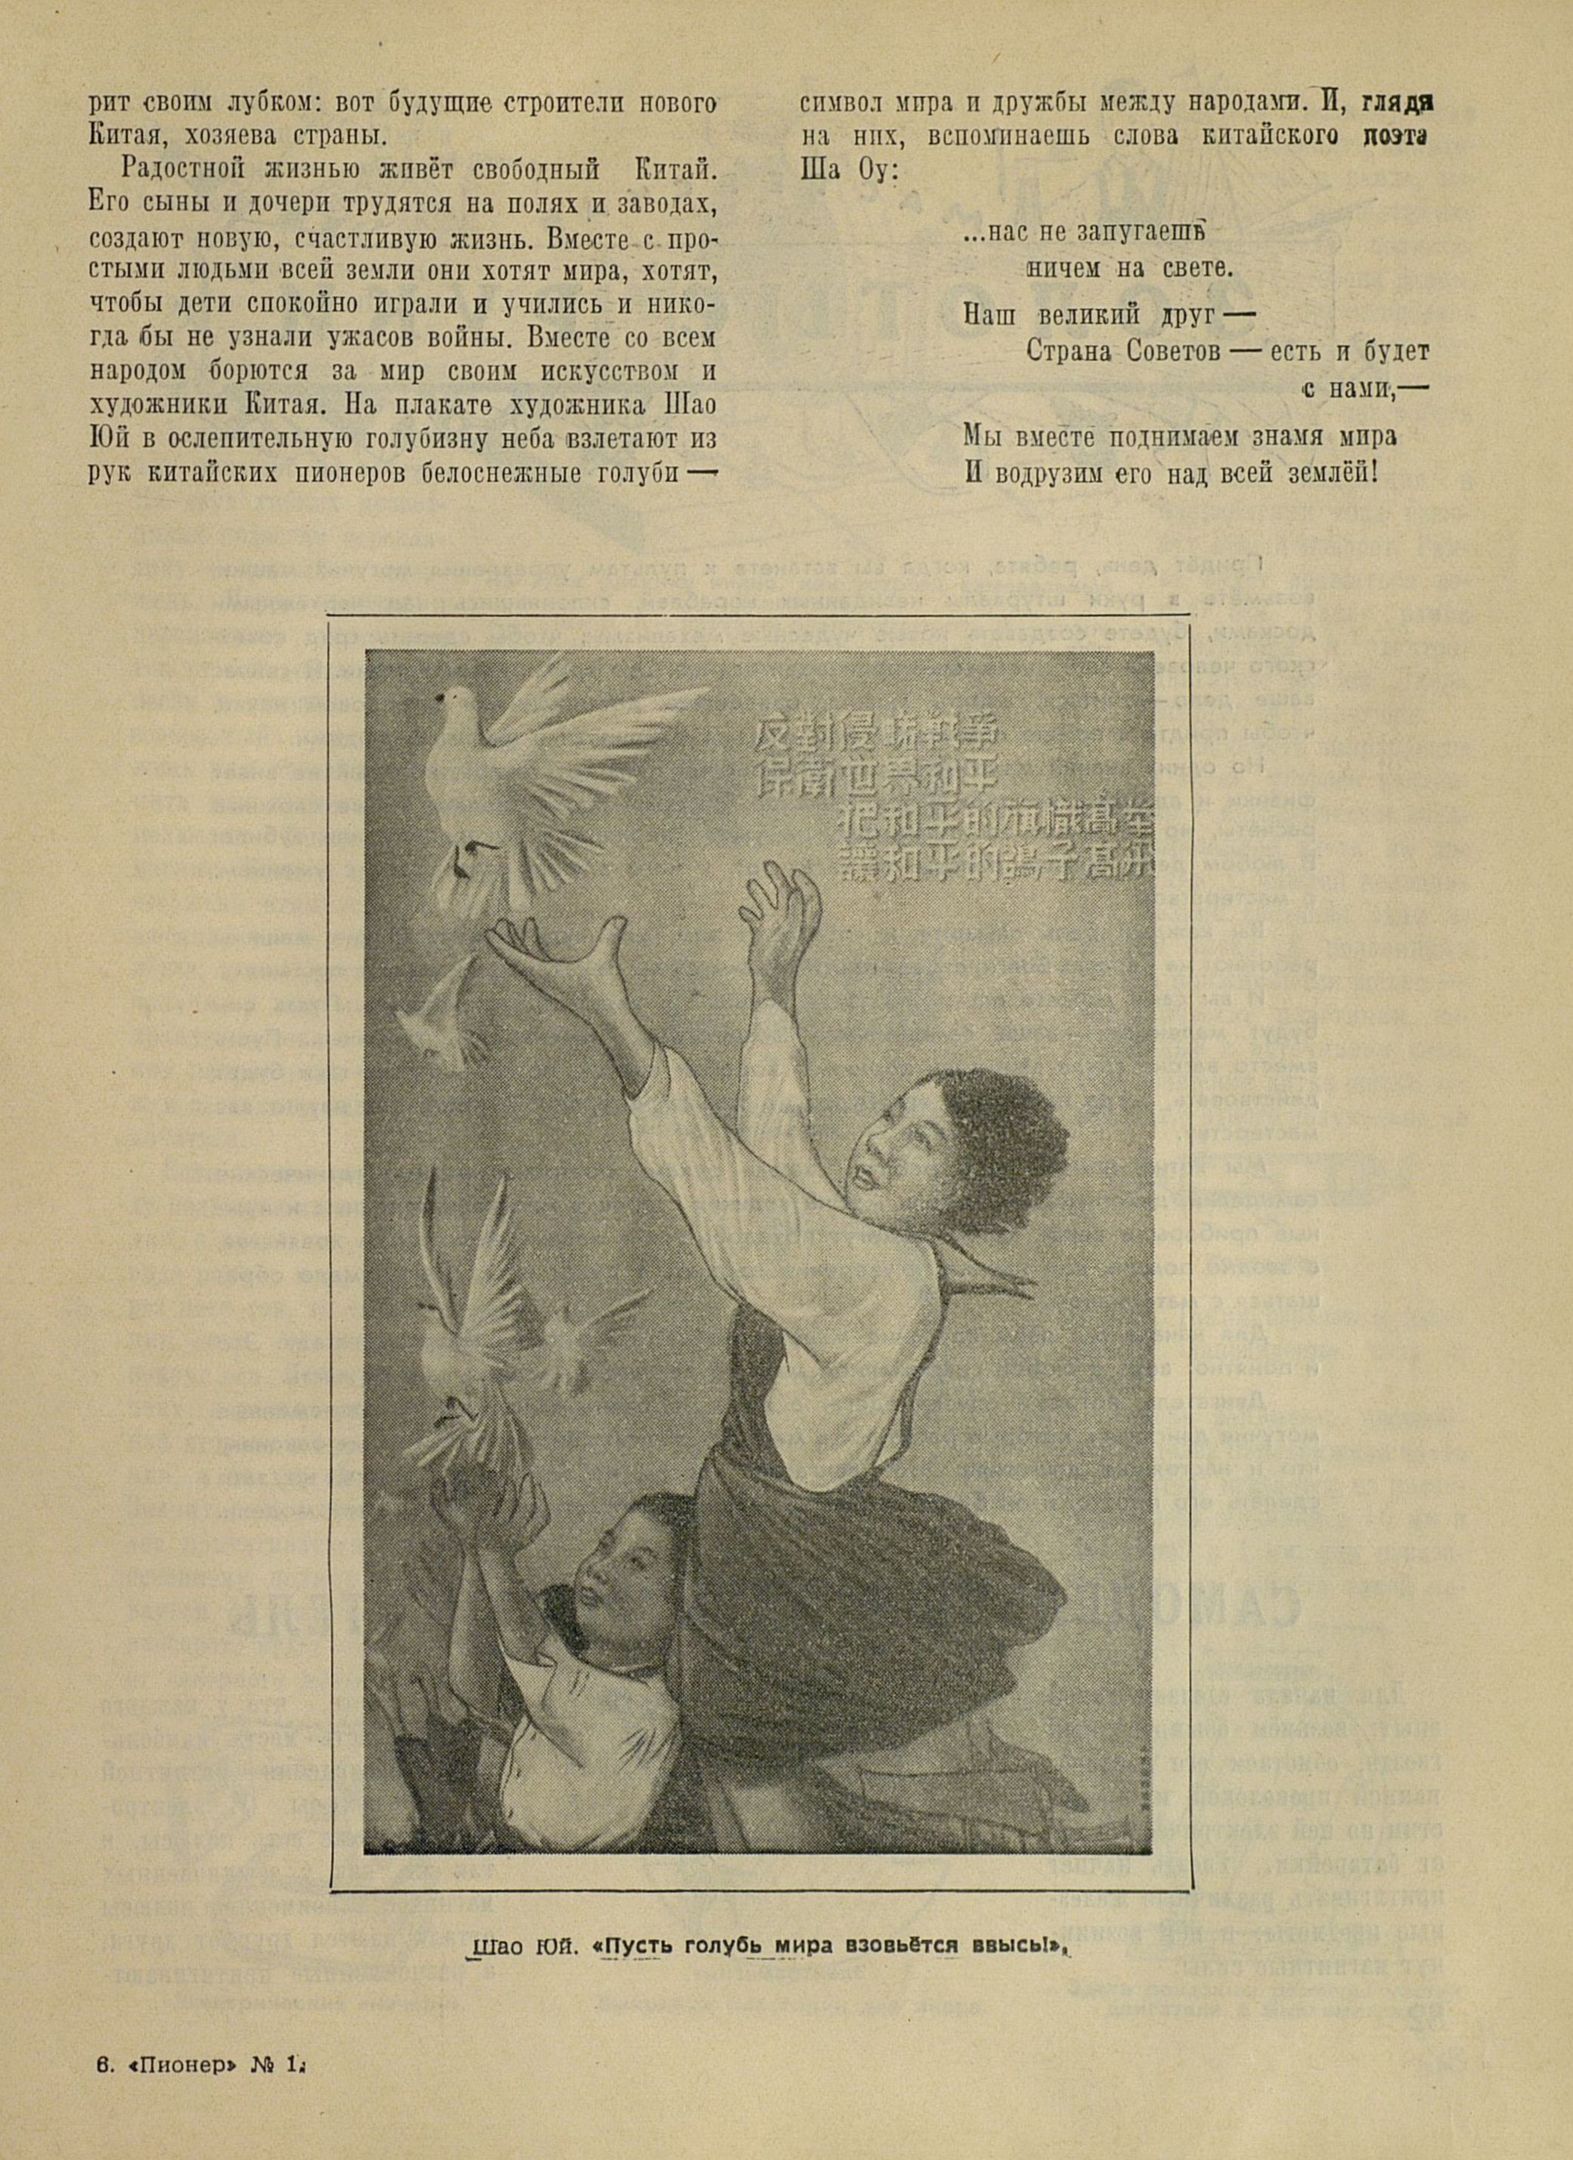 Пионер. 1952. № 12 (декабрь). С. 81.JPG